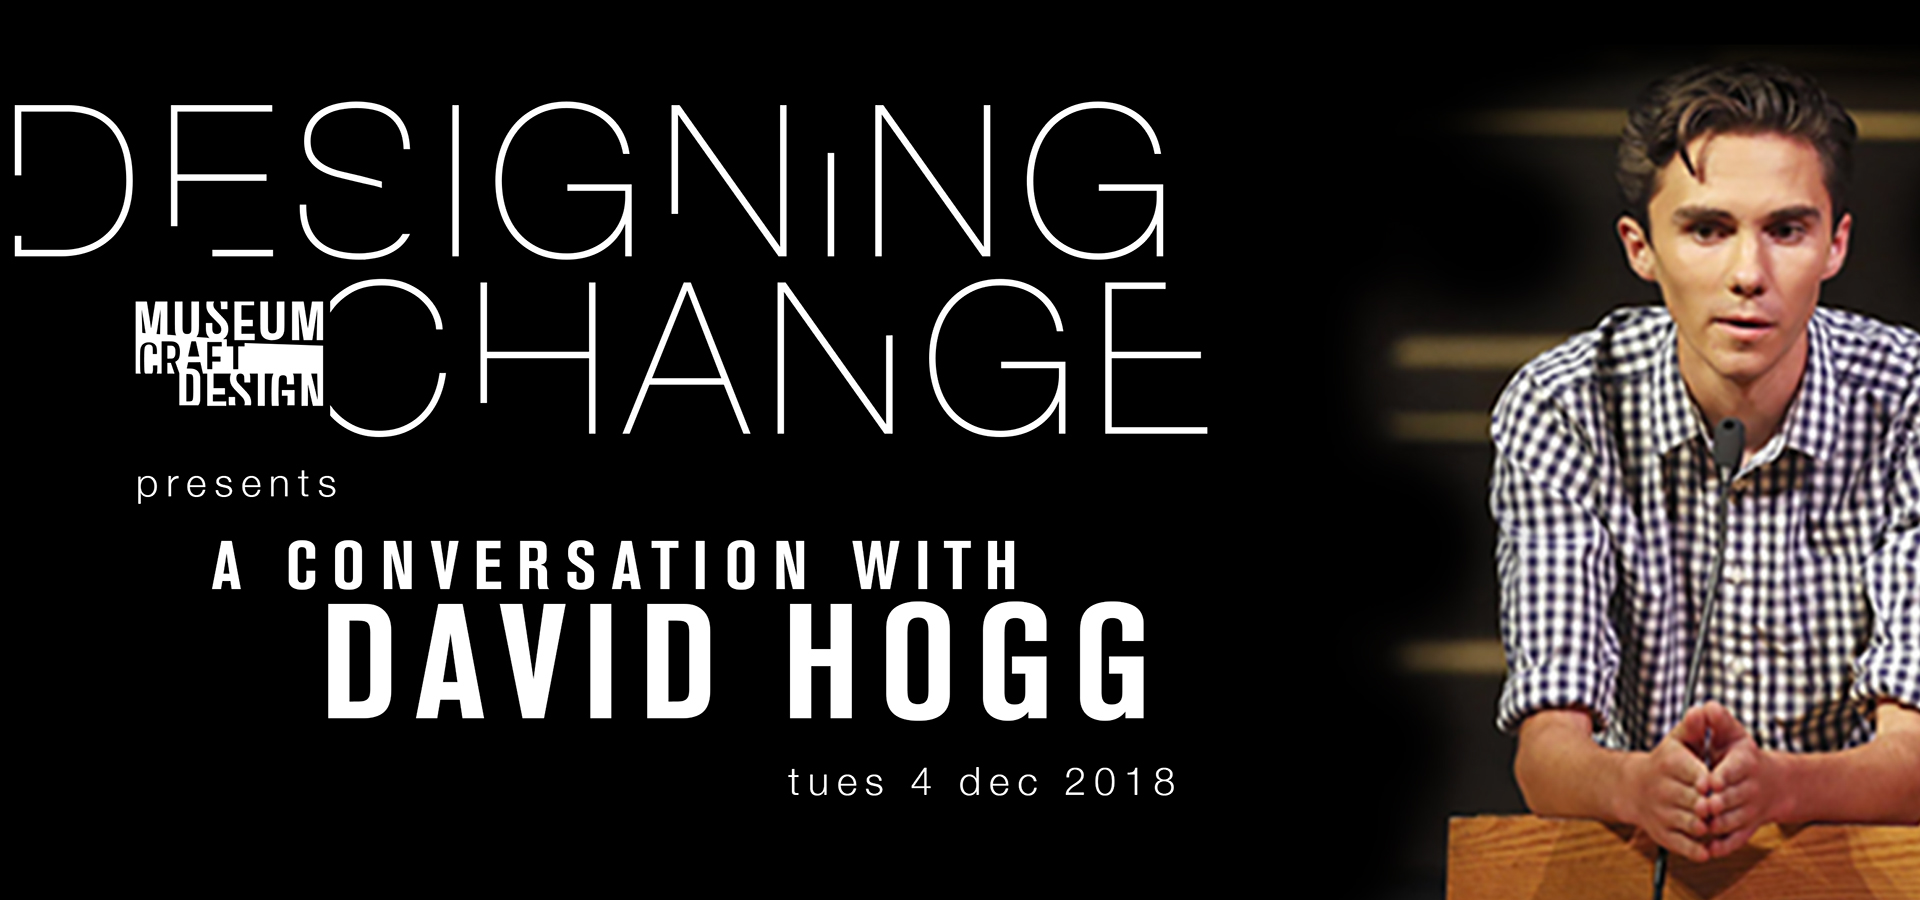 photo of David Hogg leaning on podium and Designing Change logo